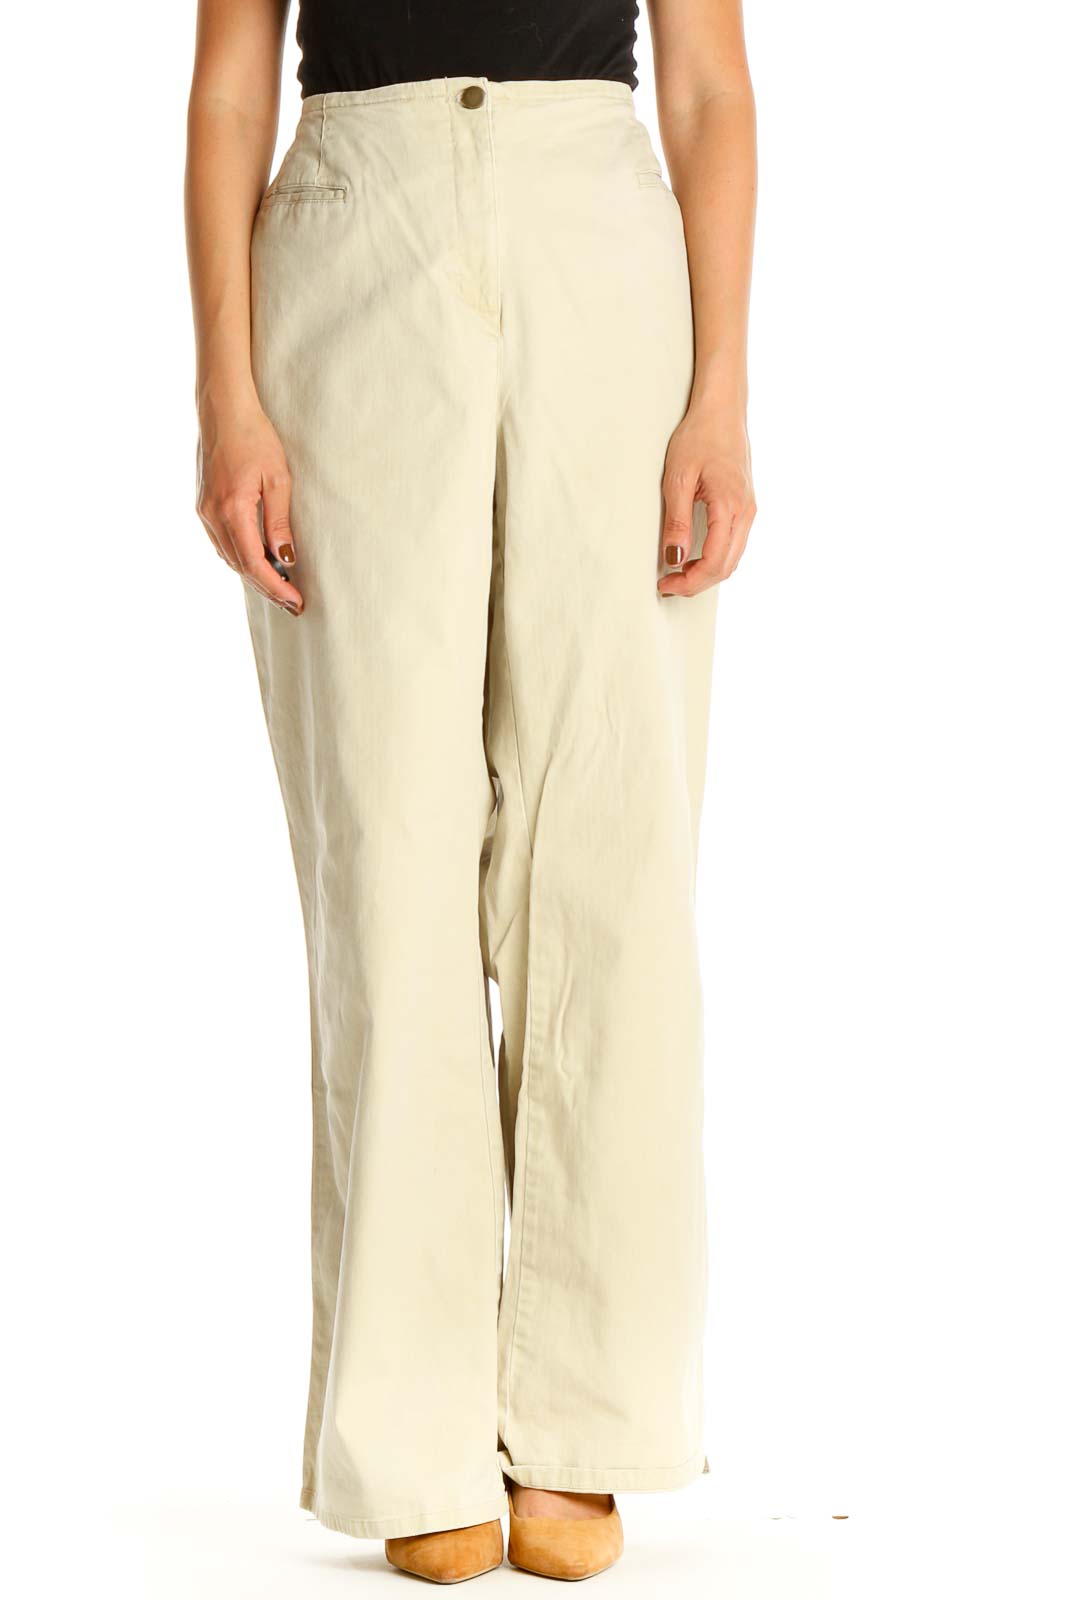 DANSKIN NOW Petite SZ P/L NWT Cotton/Polyester/Spandex Pink Sweat Pants  Trousers | eBay